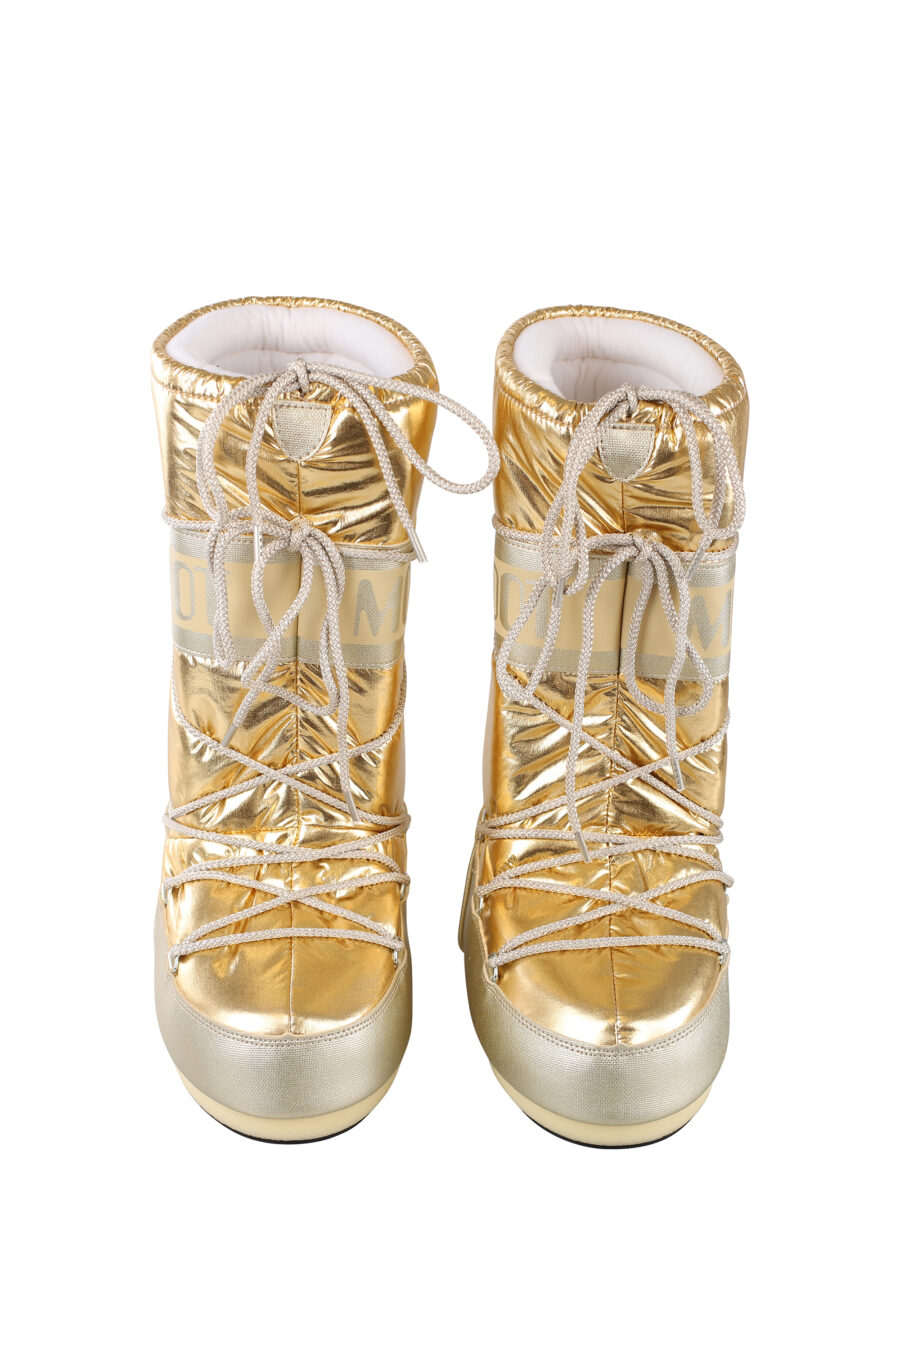 Moon Boot - Botas doradas brillante nieve y - BLS Fashion